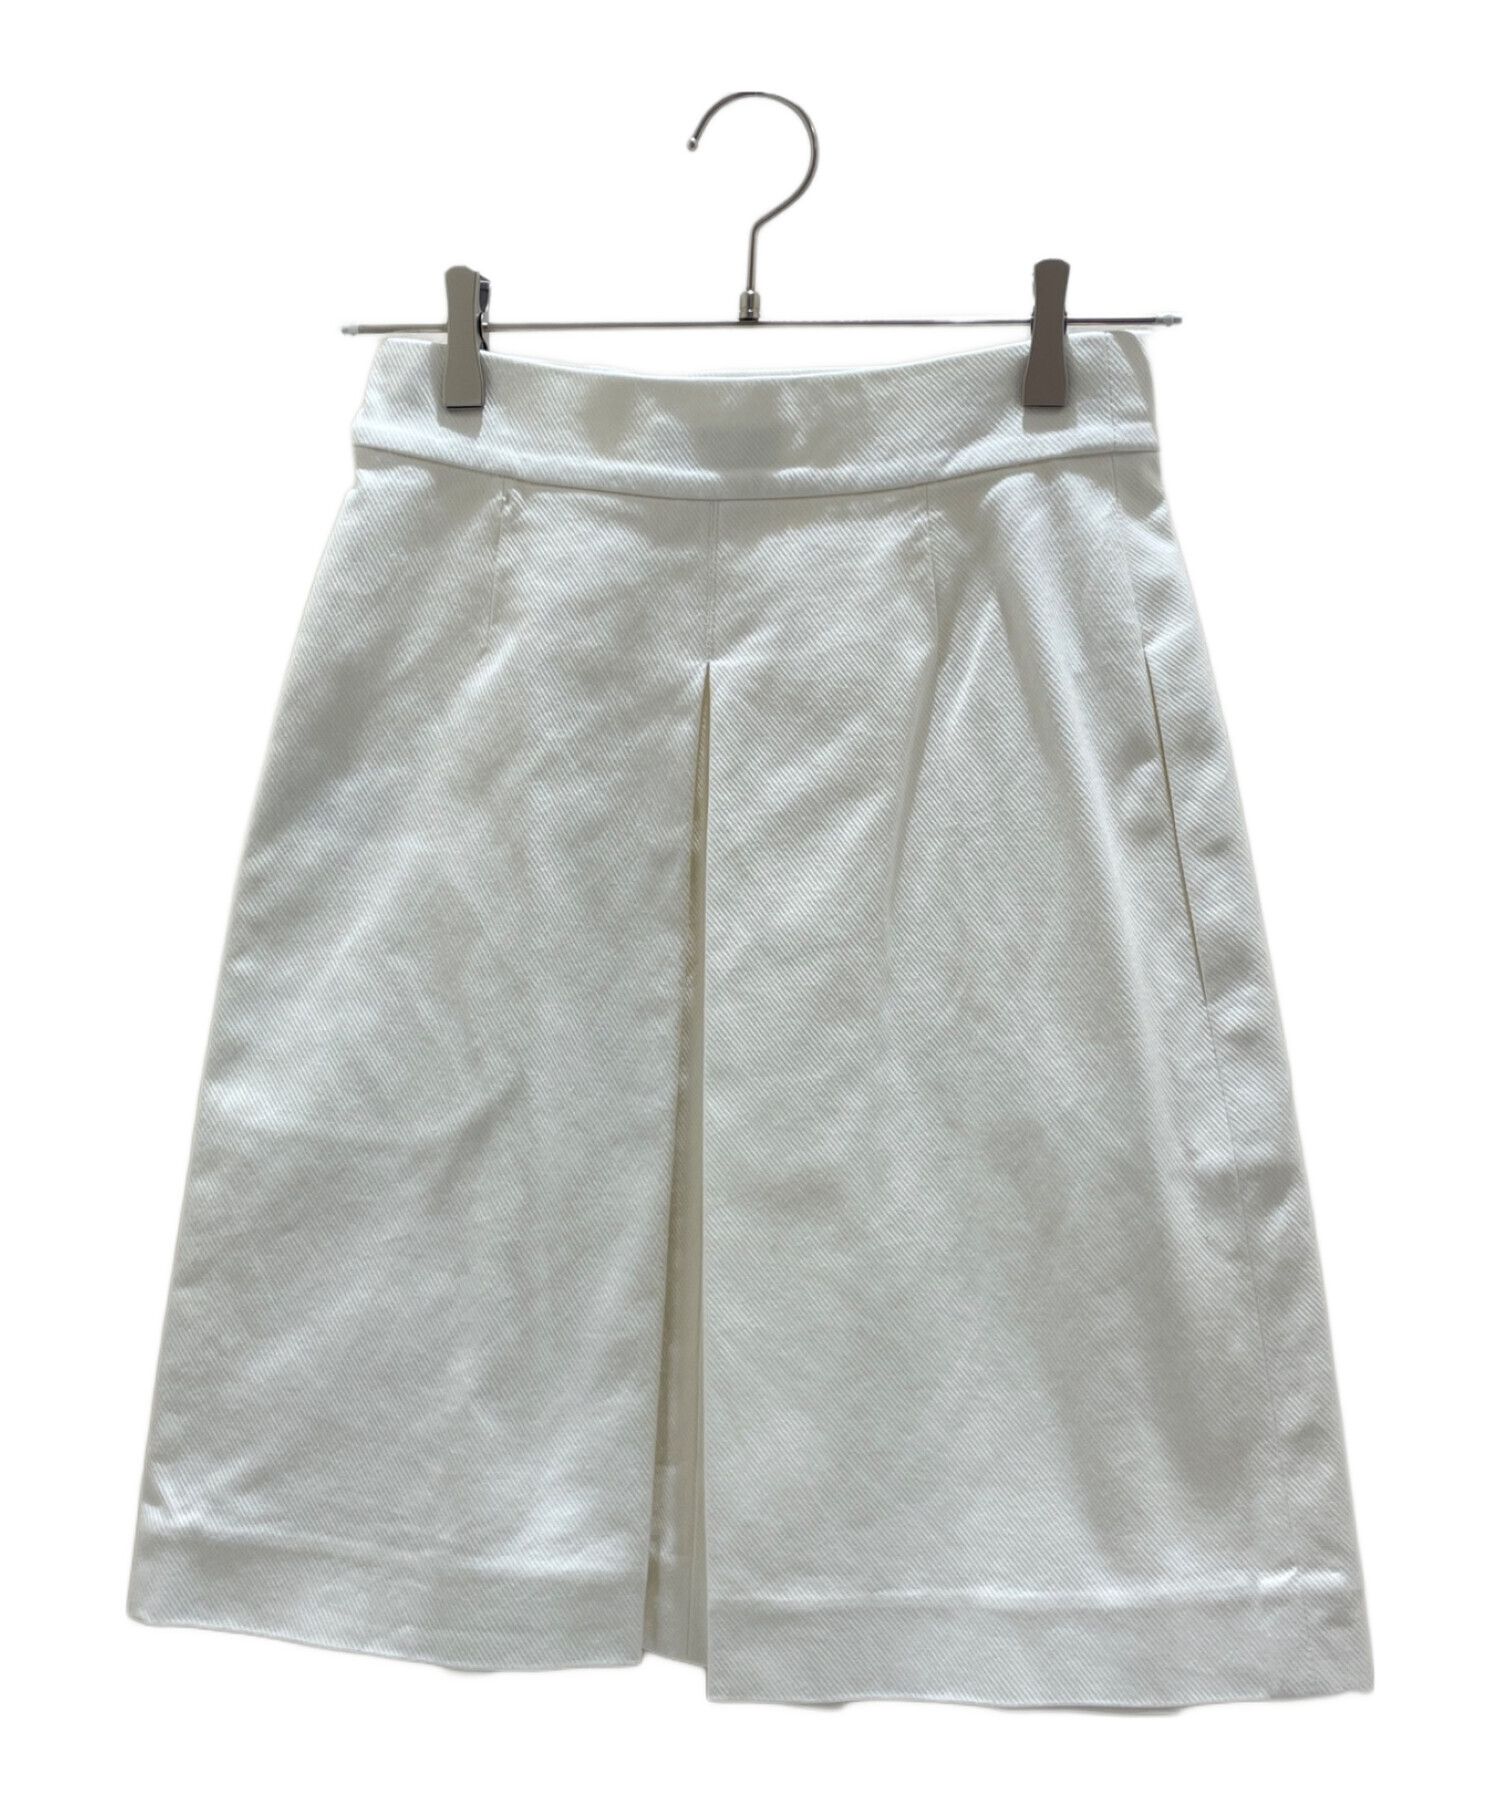 CHANEL (シャネル) ココボタンスカート ホワイト サイズ:36